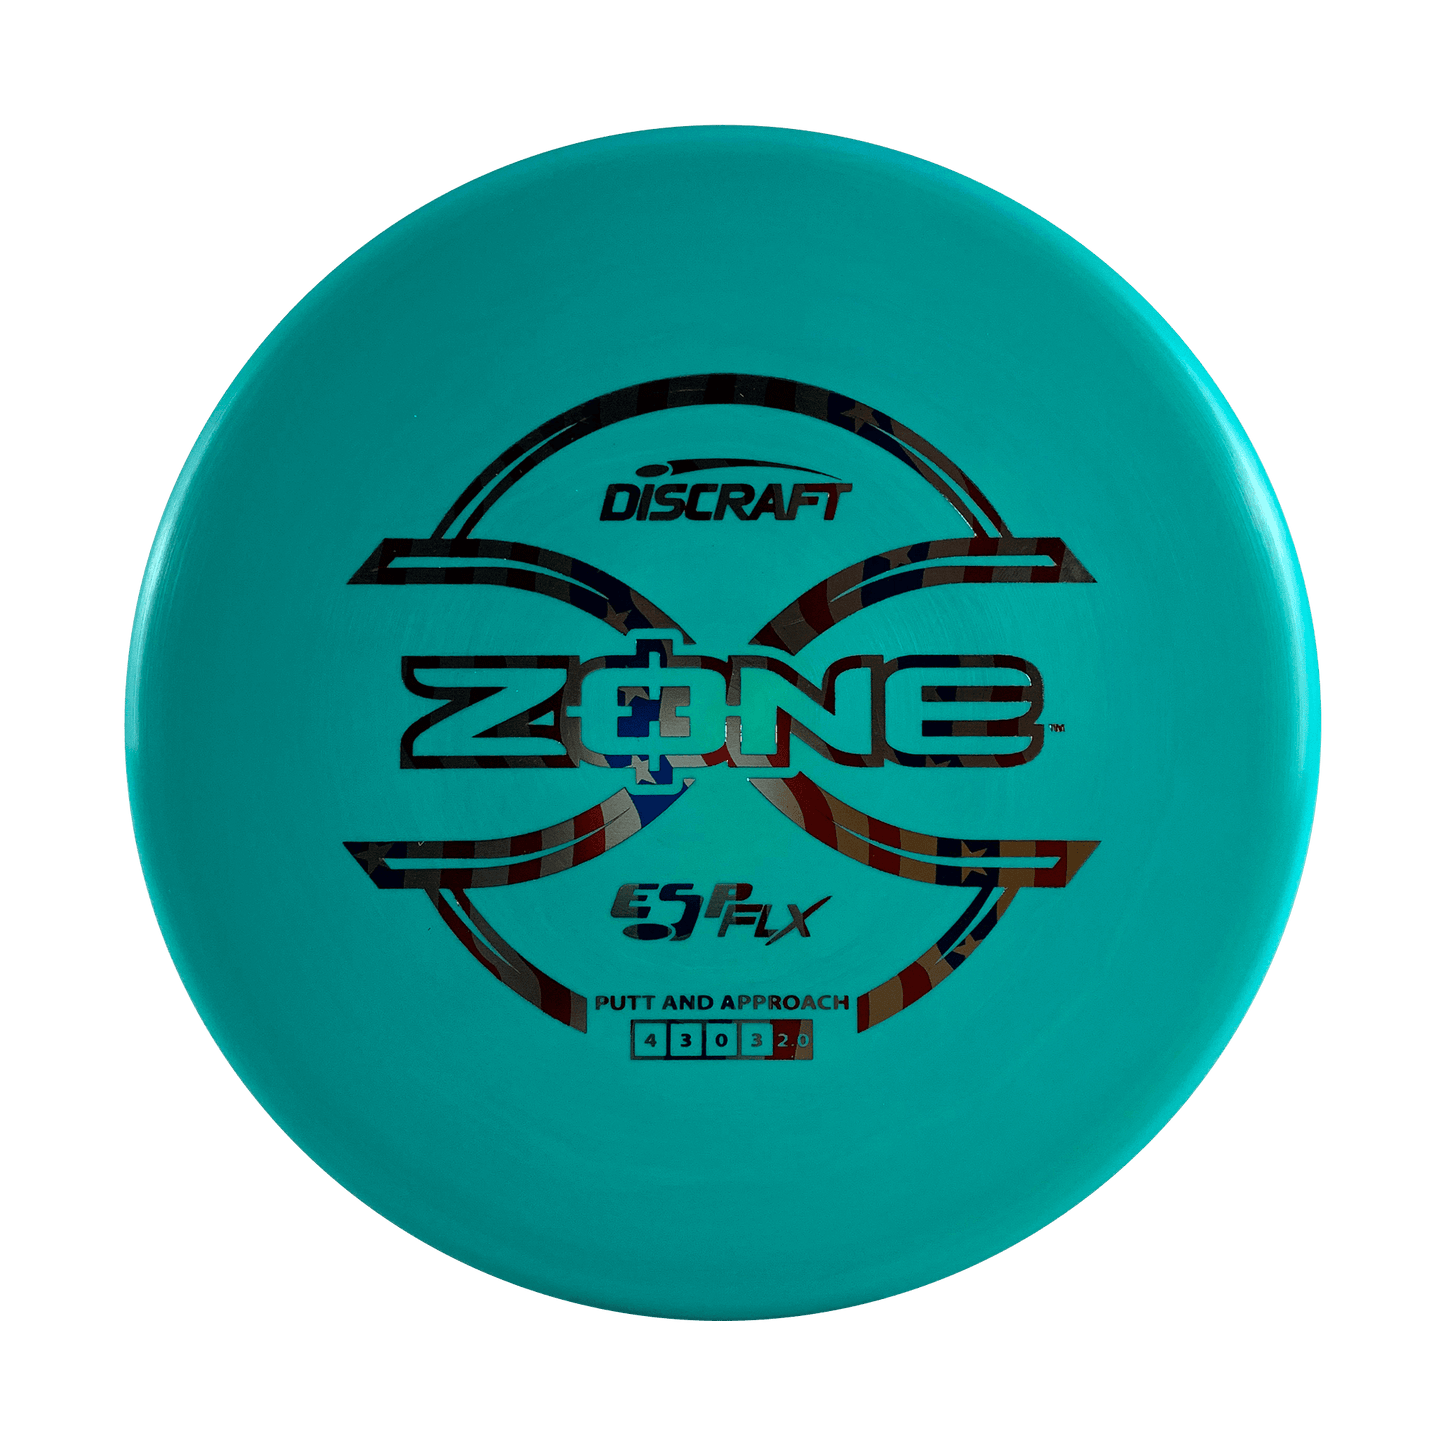 ESP FLX Zone Disc Discraft teal 173 